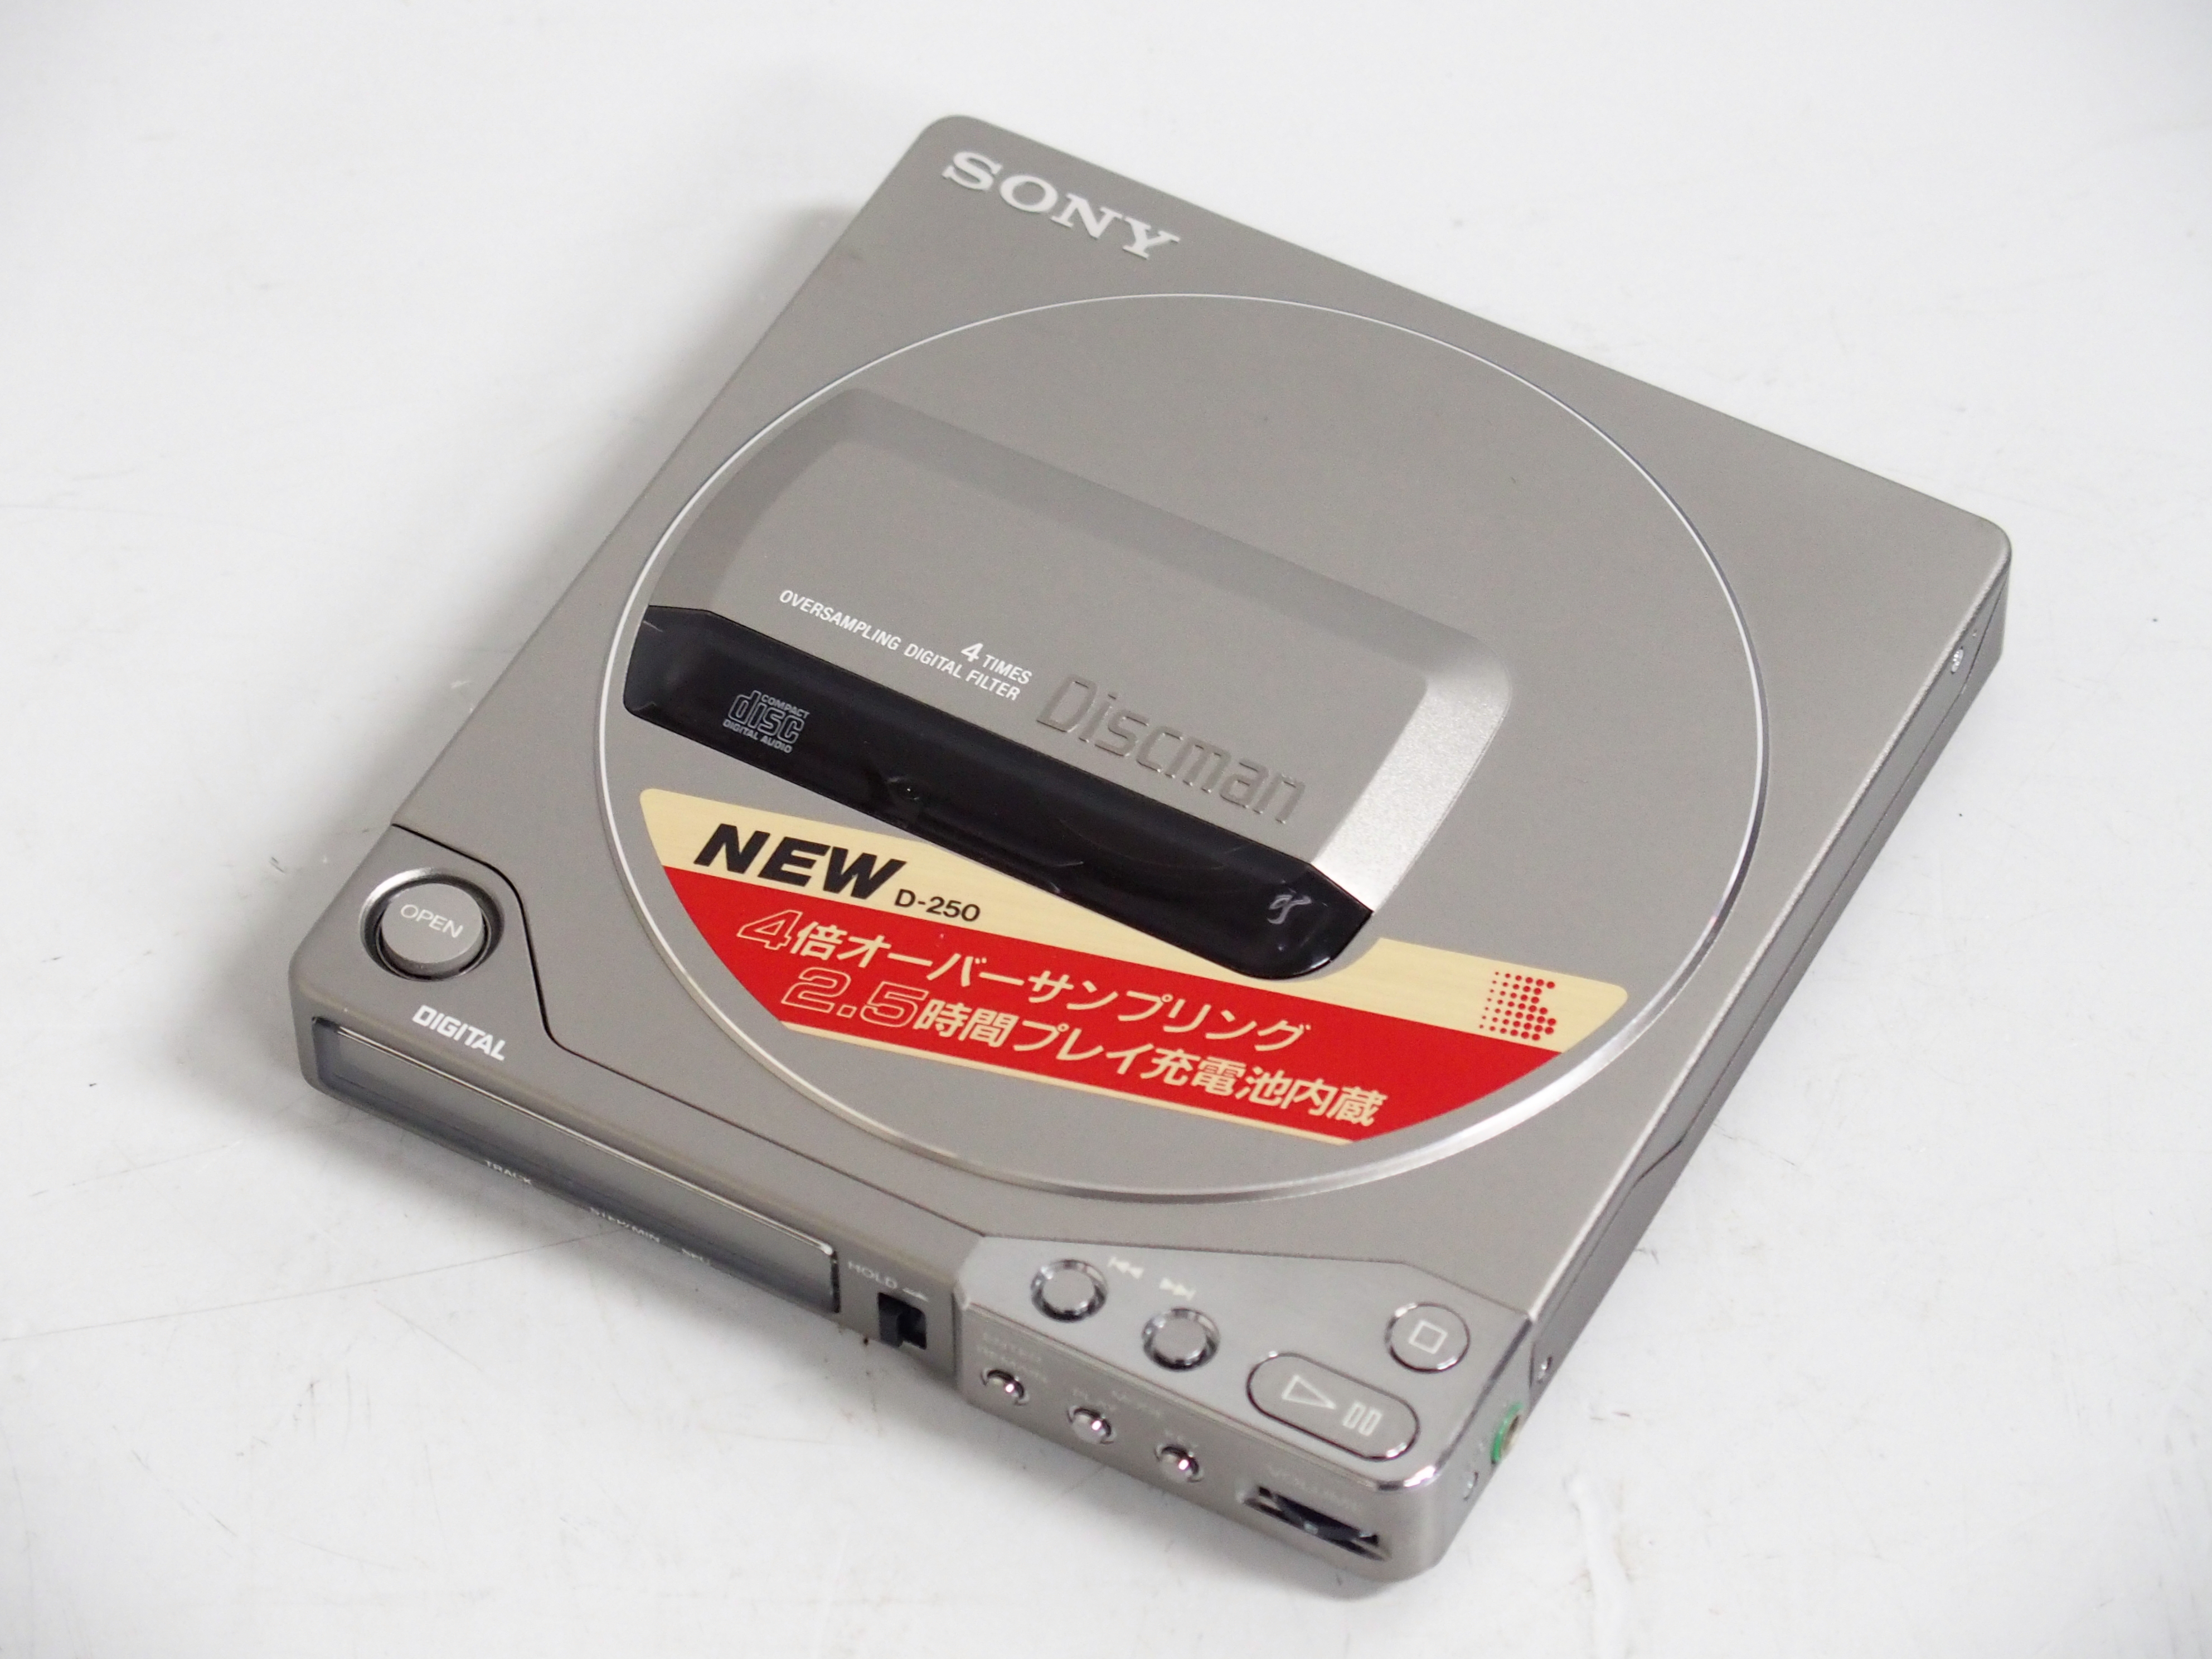 Sony ソニー Discman ディスクマン CDプレーヤー D-250 買い取りさせて 